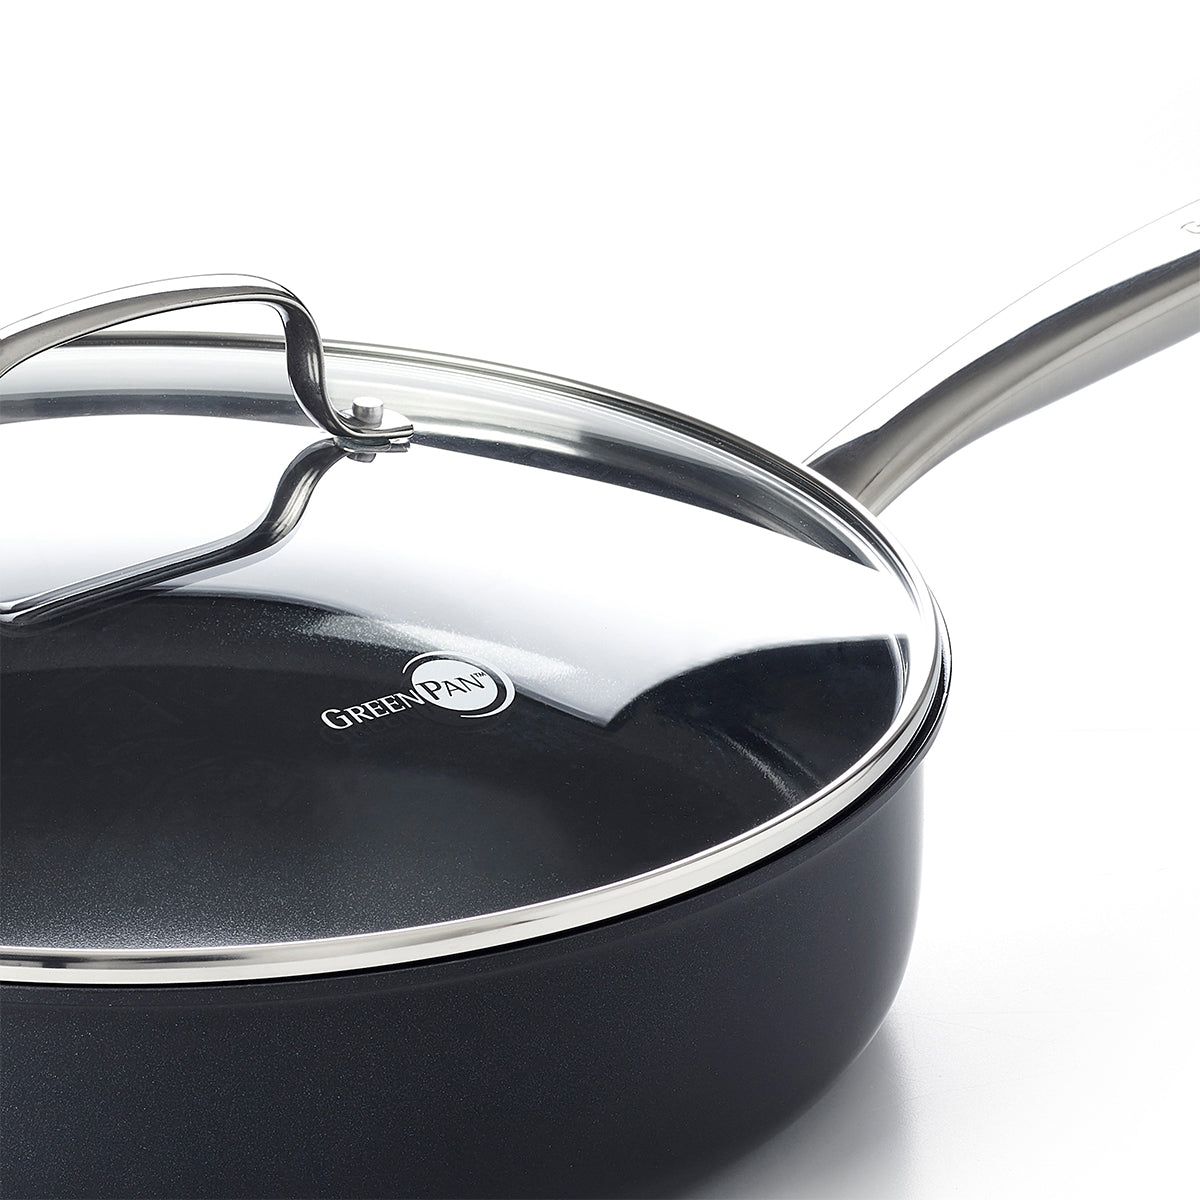 Cooks Standard 5 Quarts Non-Stick Aluminum Saute Pan with Lid & Reviews